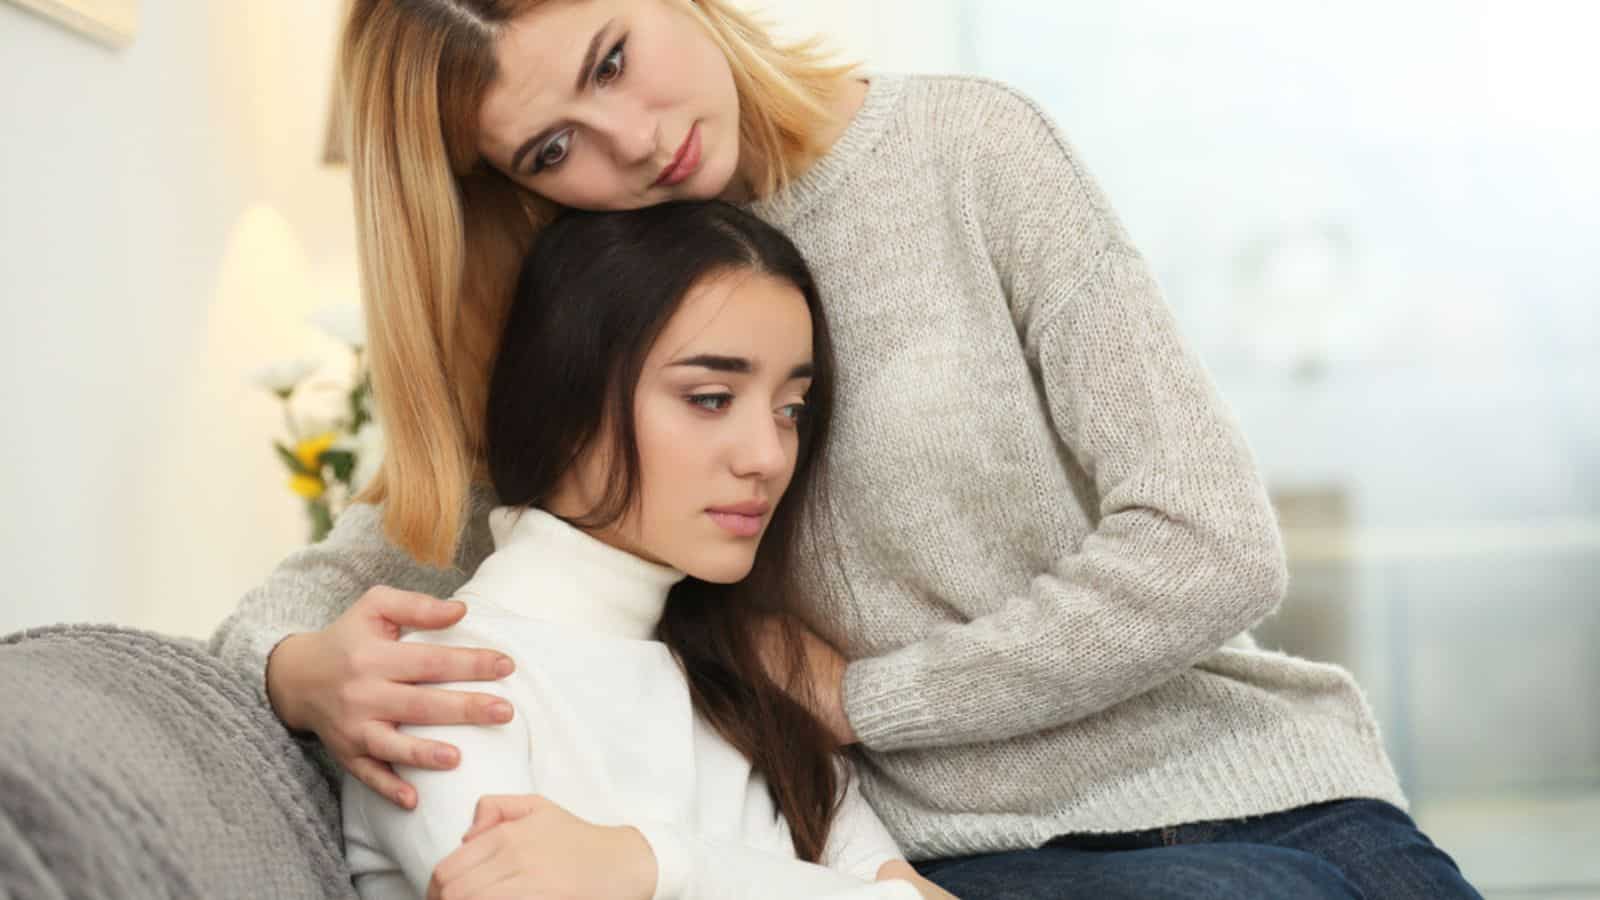 Woman hugging depressed friend